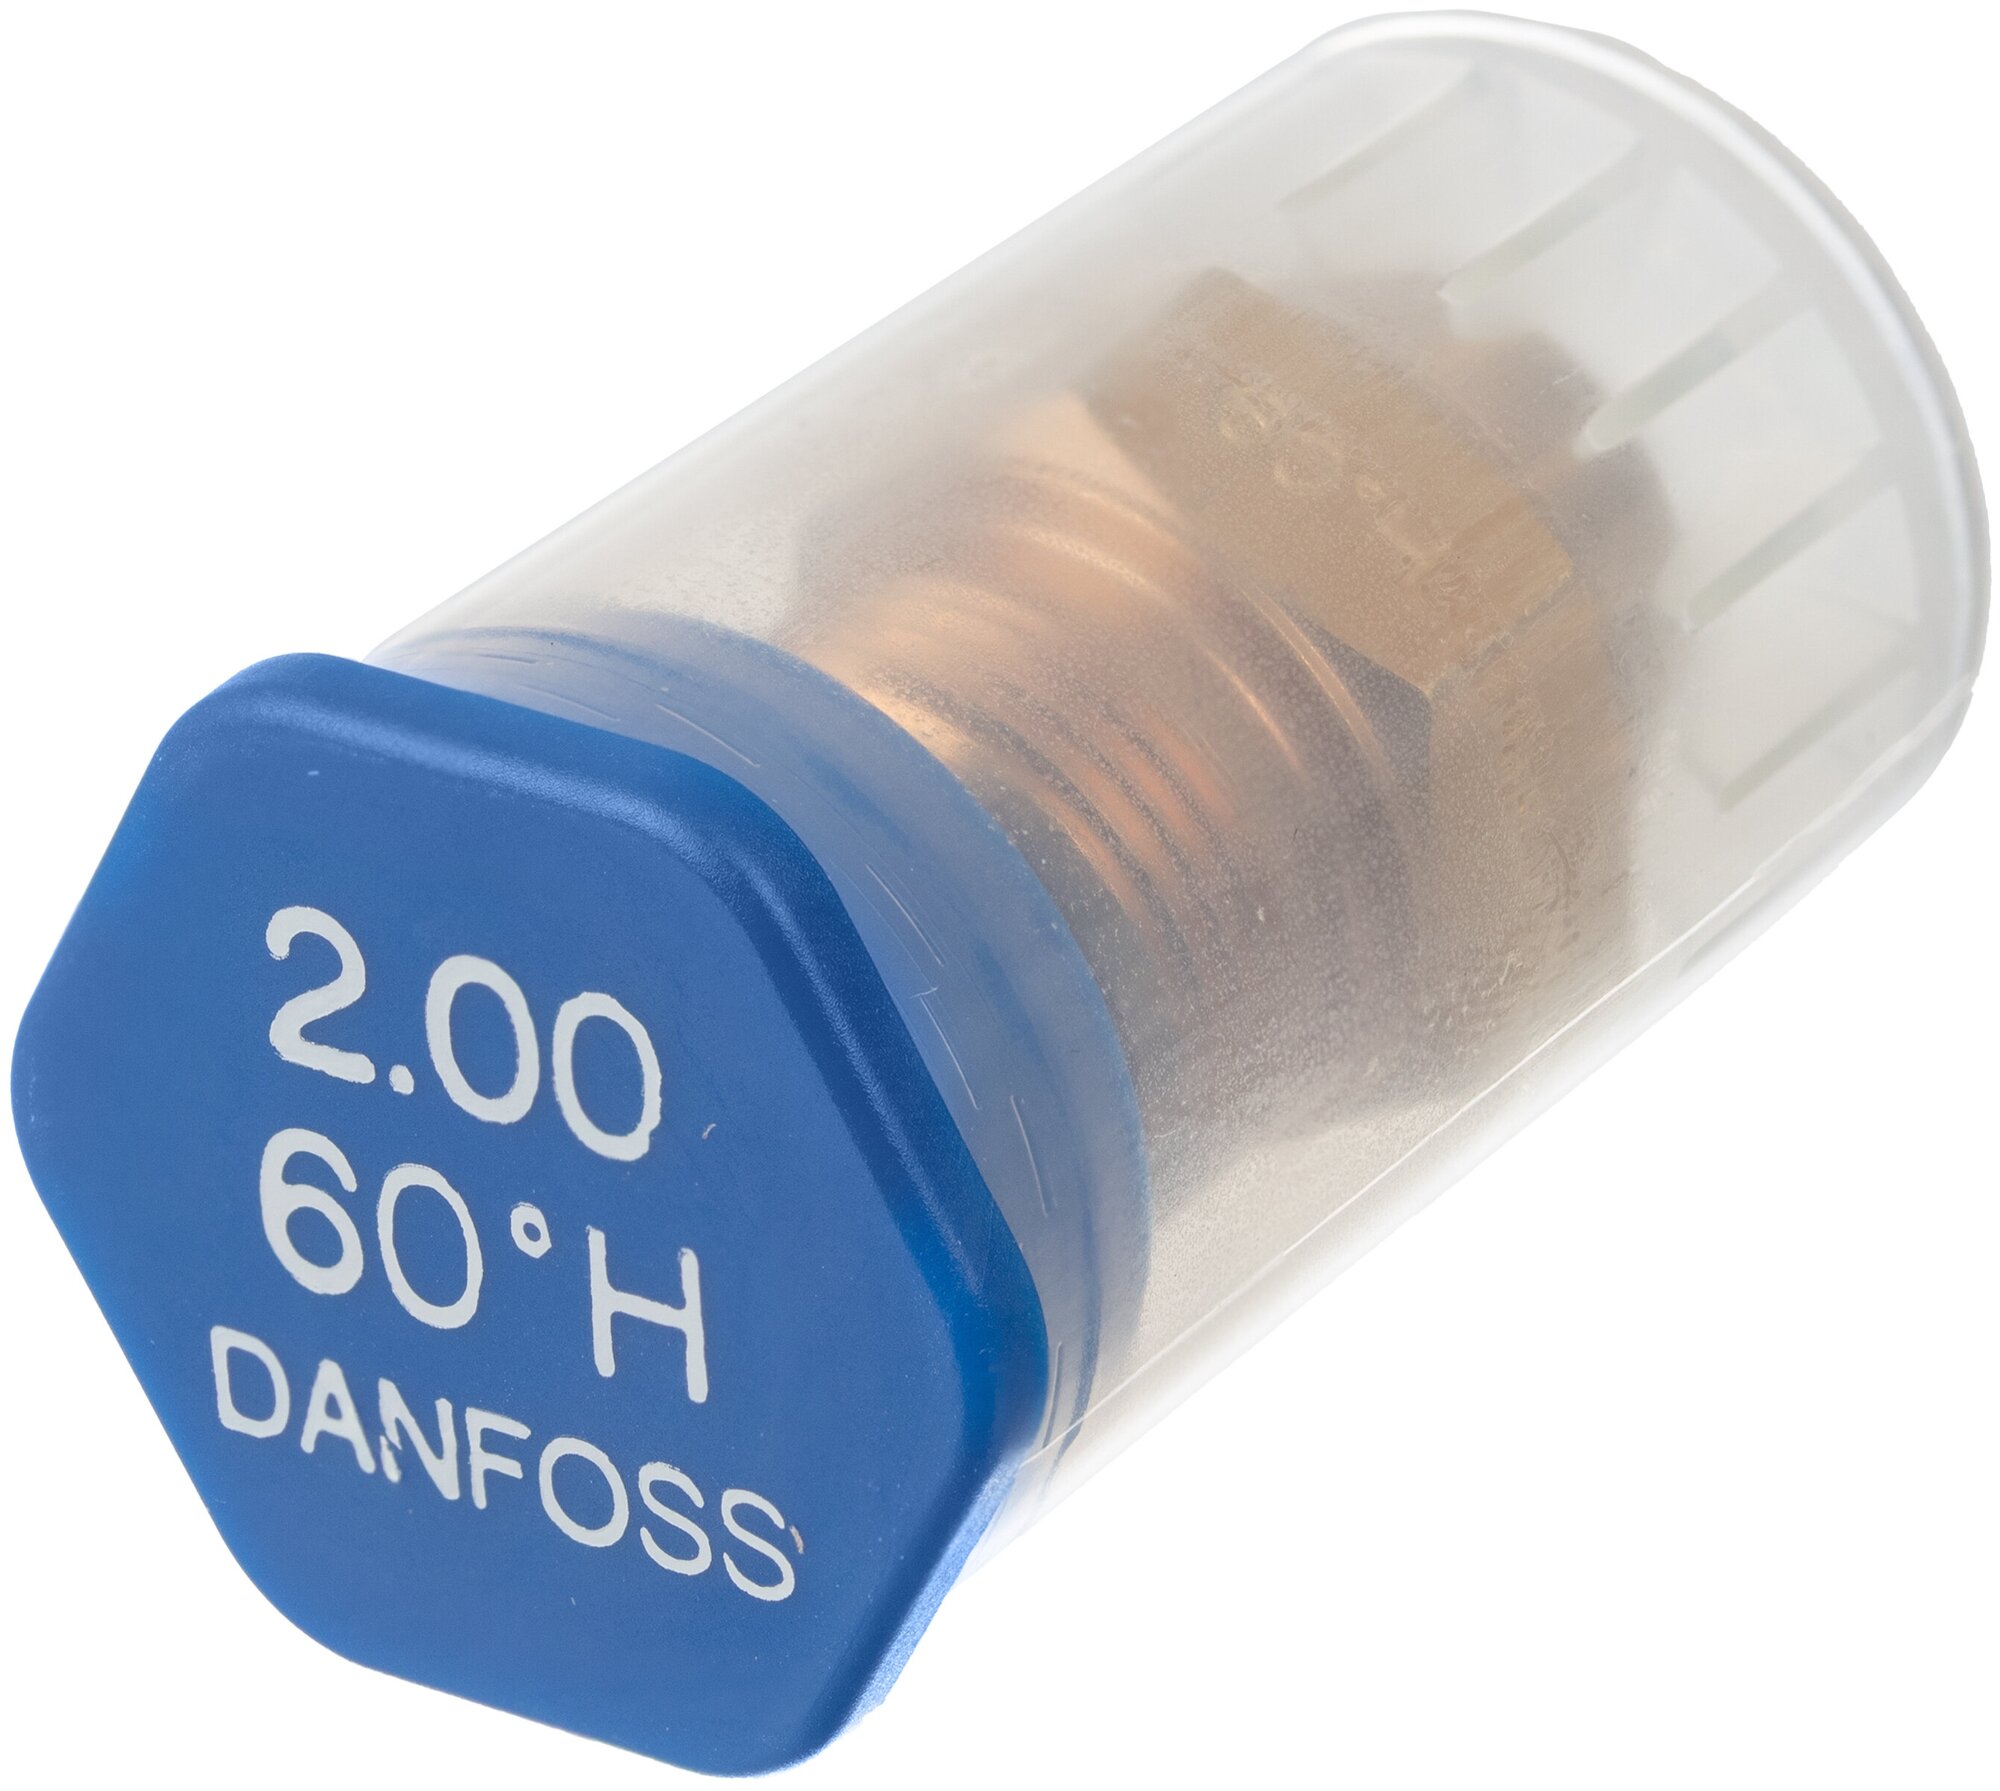 Форсунка для дизельного топлива DANFOSS 2.0 gal/h (7.42 kg/h) * 60 Н. арт. 030H6132